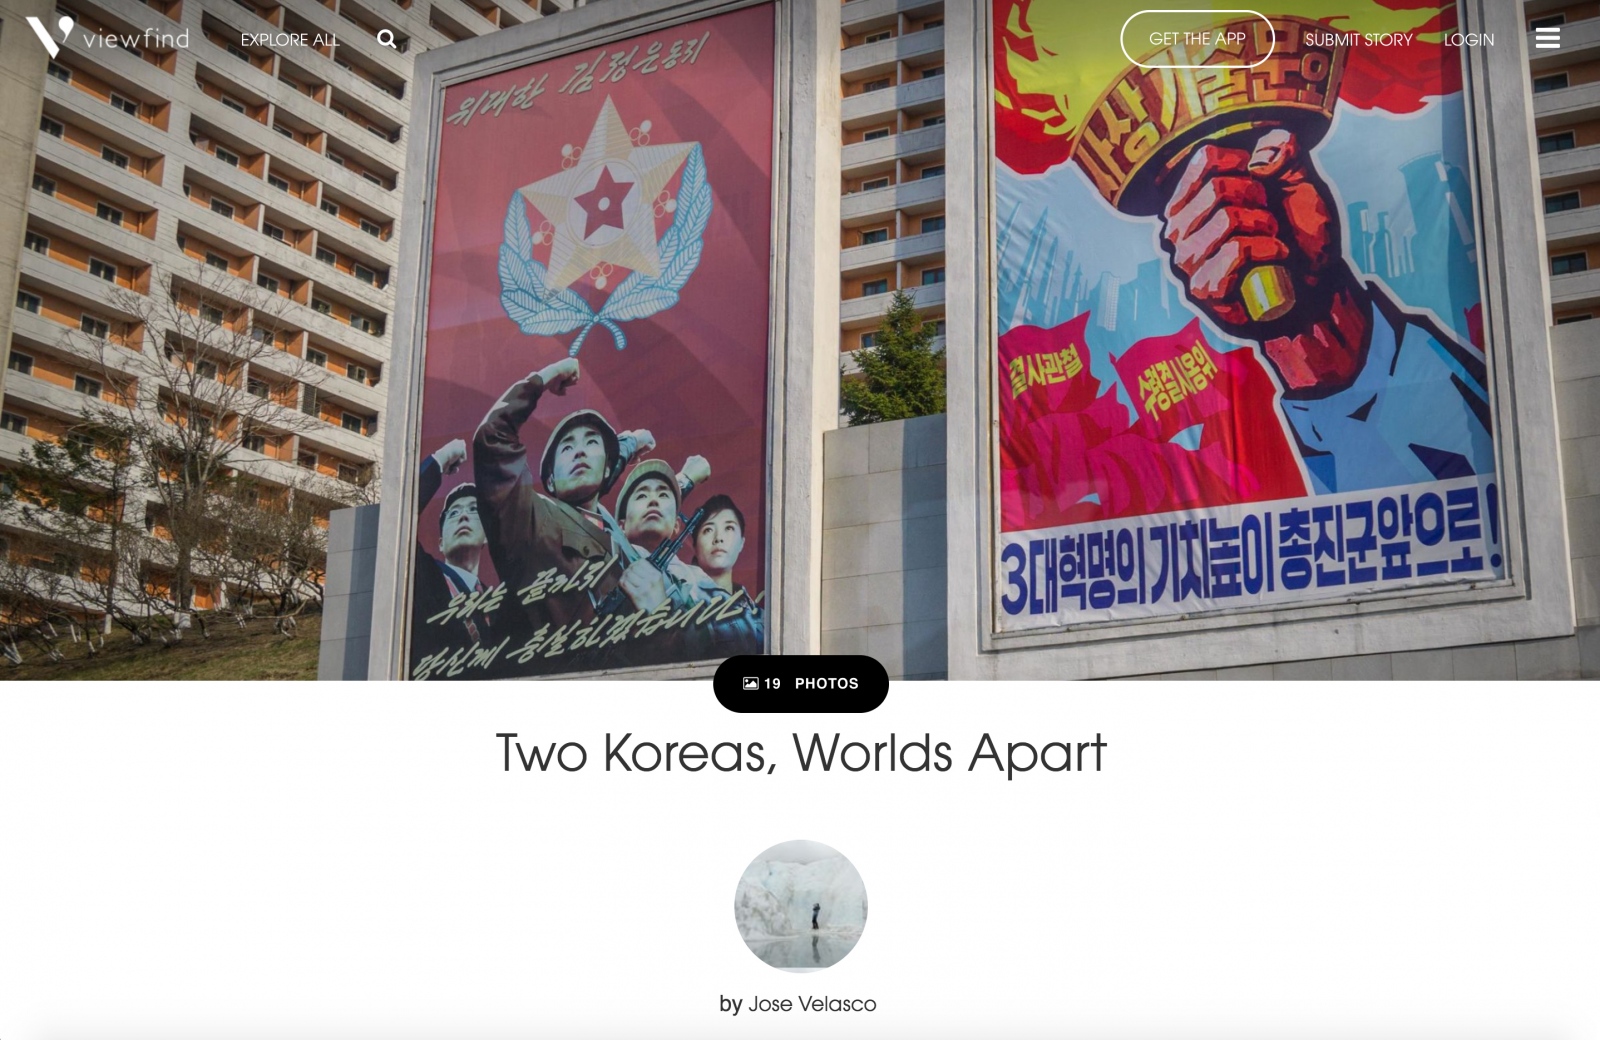  "Two Koreas, Worlds Apart" by Jose Velasco 